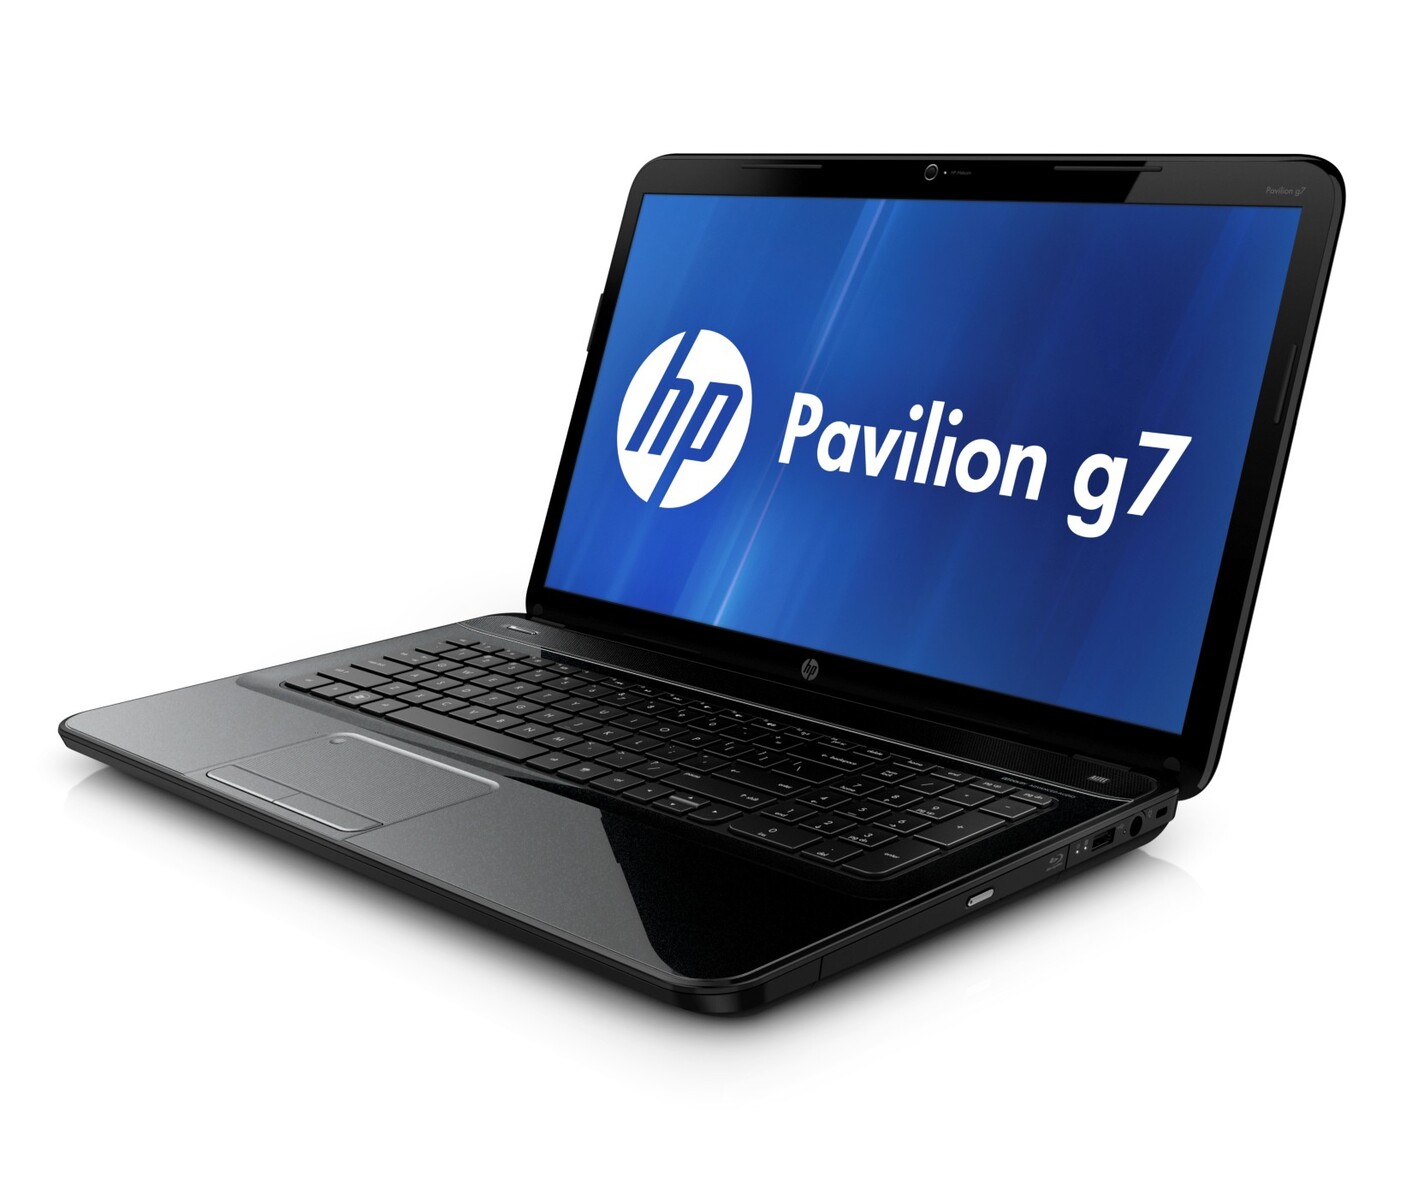 HP Pavilion g7 Series - Notebookcheck.net External Reviews